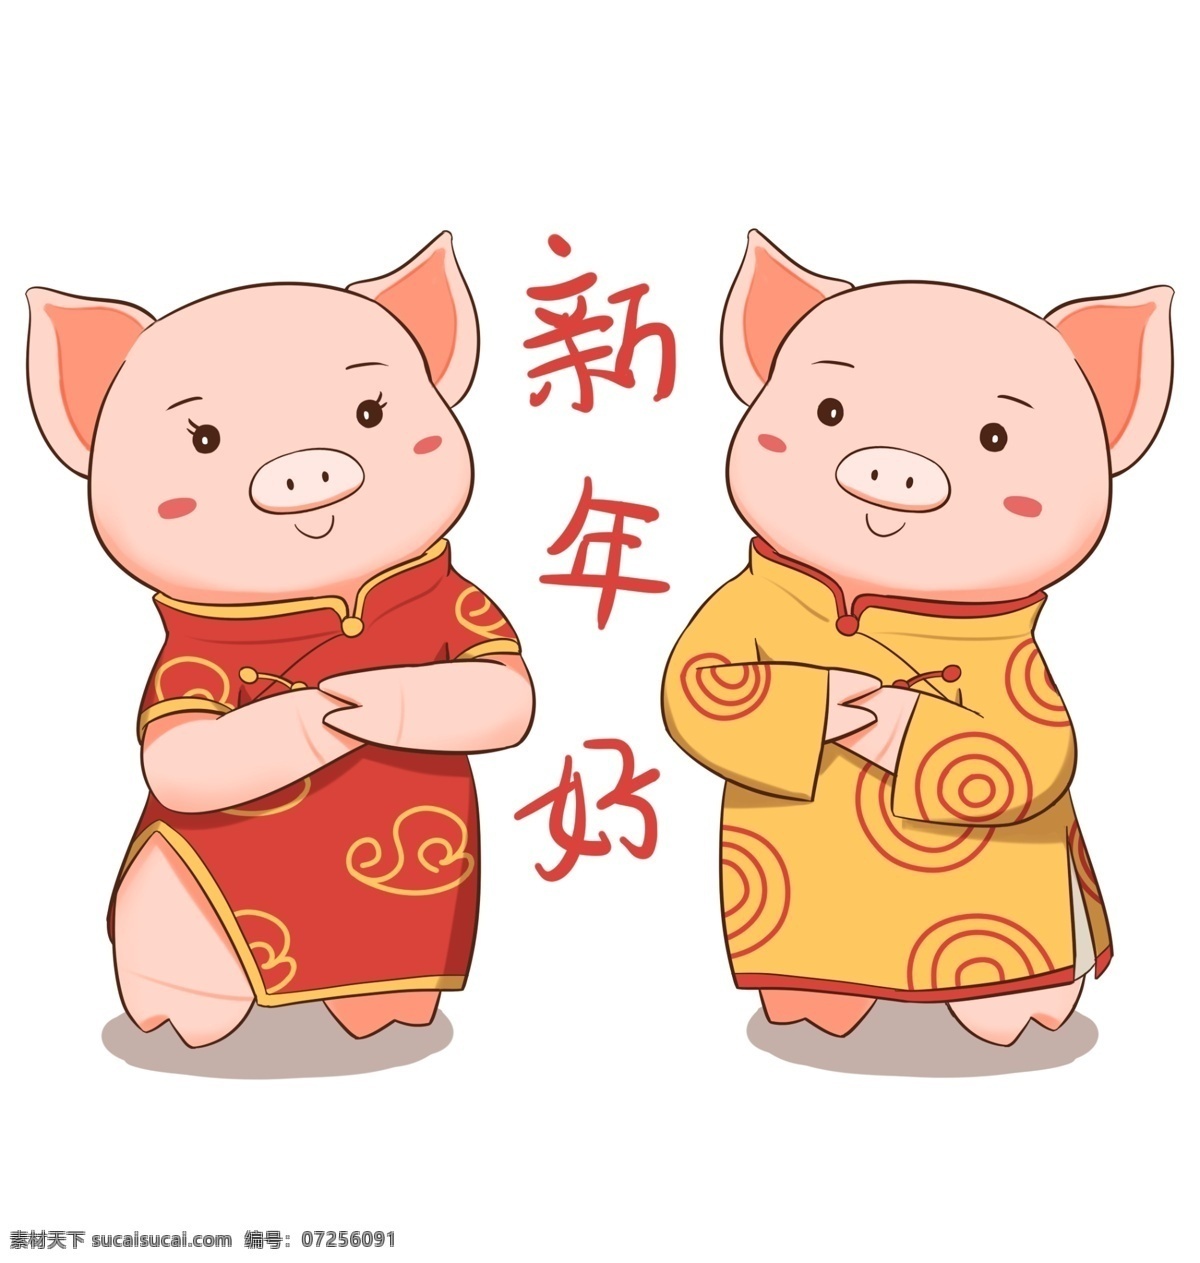 手绘 春节 猪年 卡通 金 猪 拜年 新年快乐 新年节日 卡通金猪 红色旗袍 黄色服装 祝福语